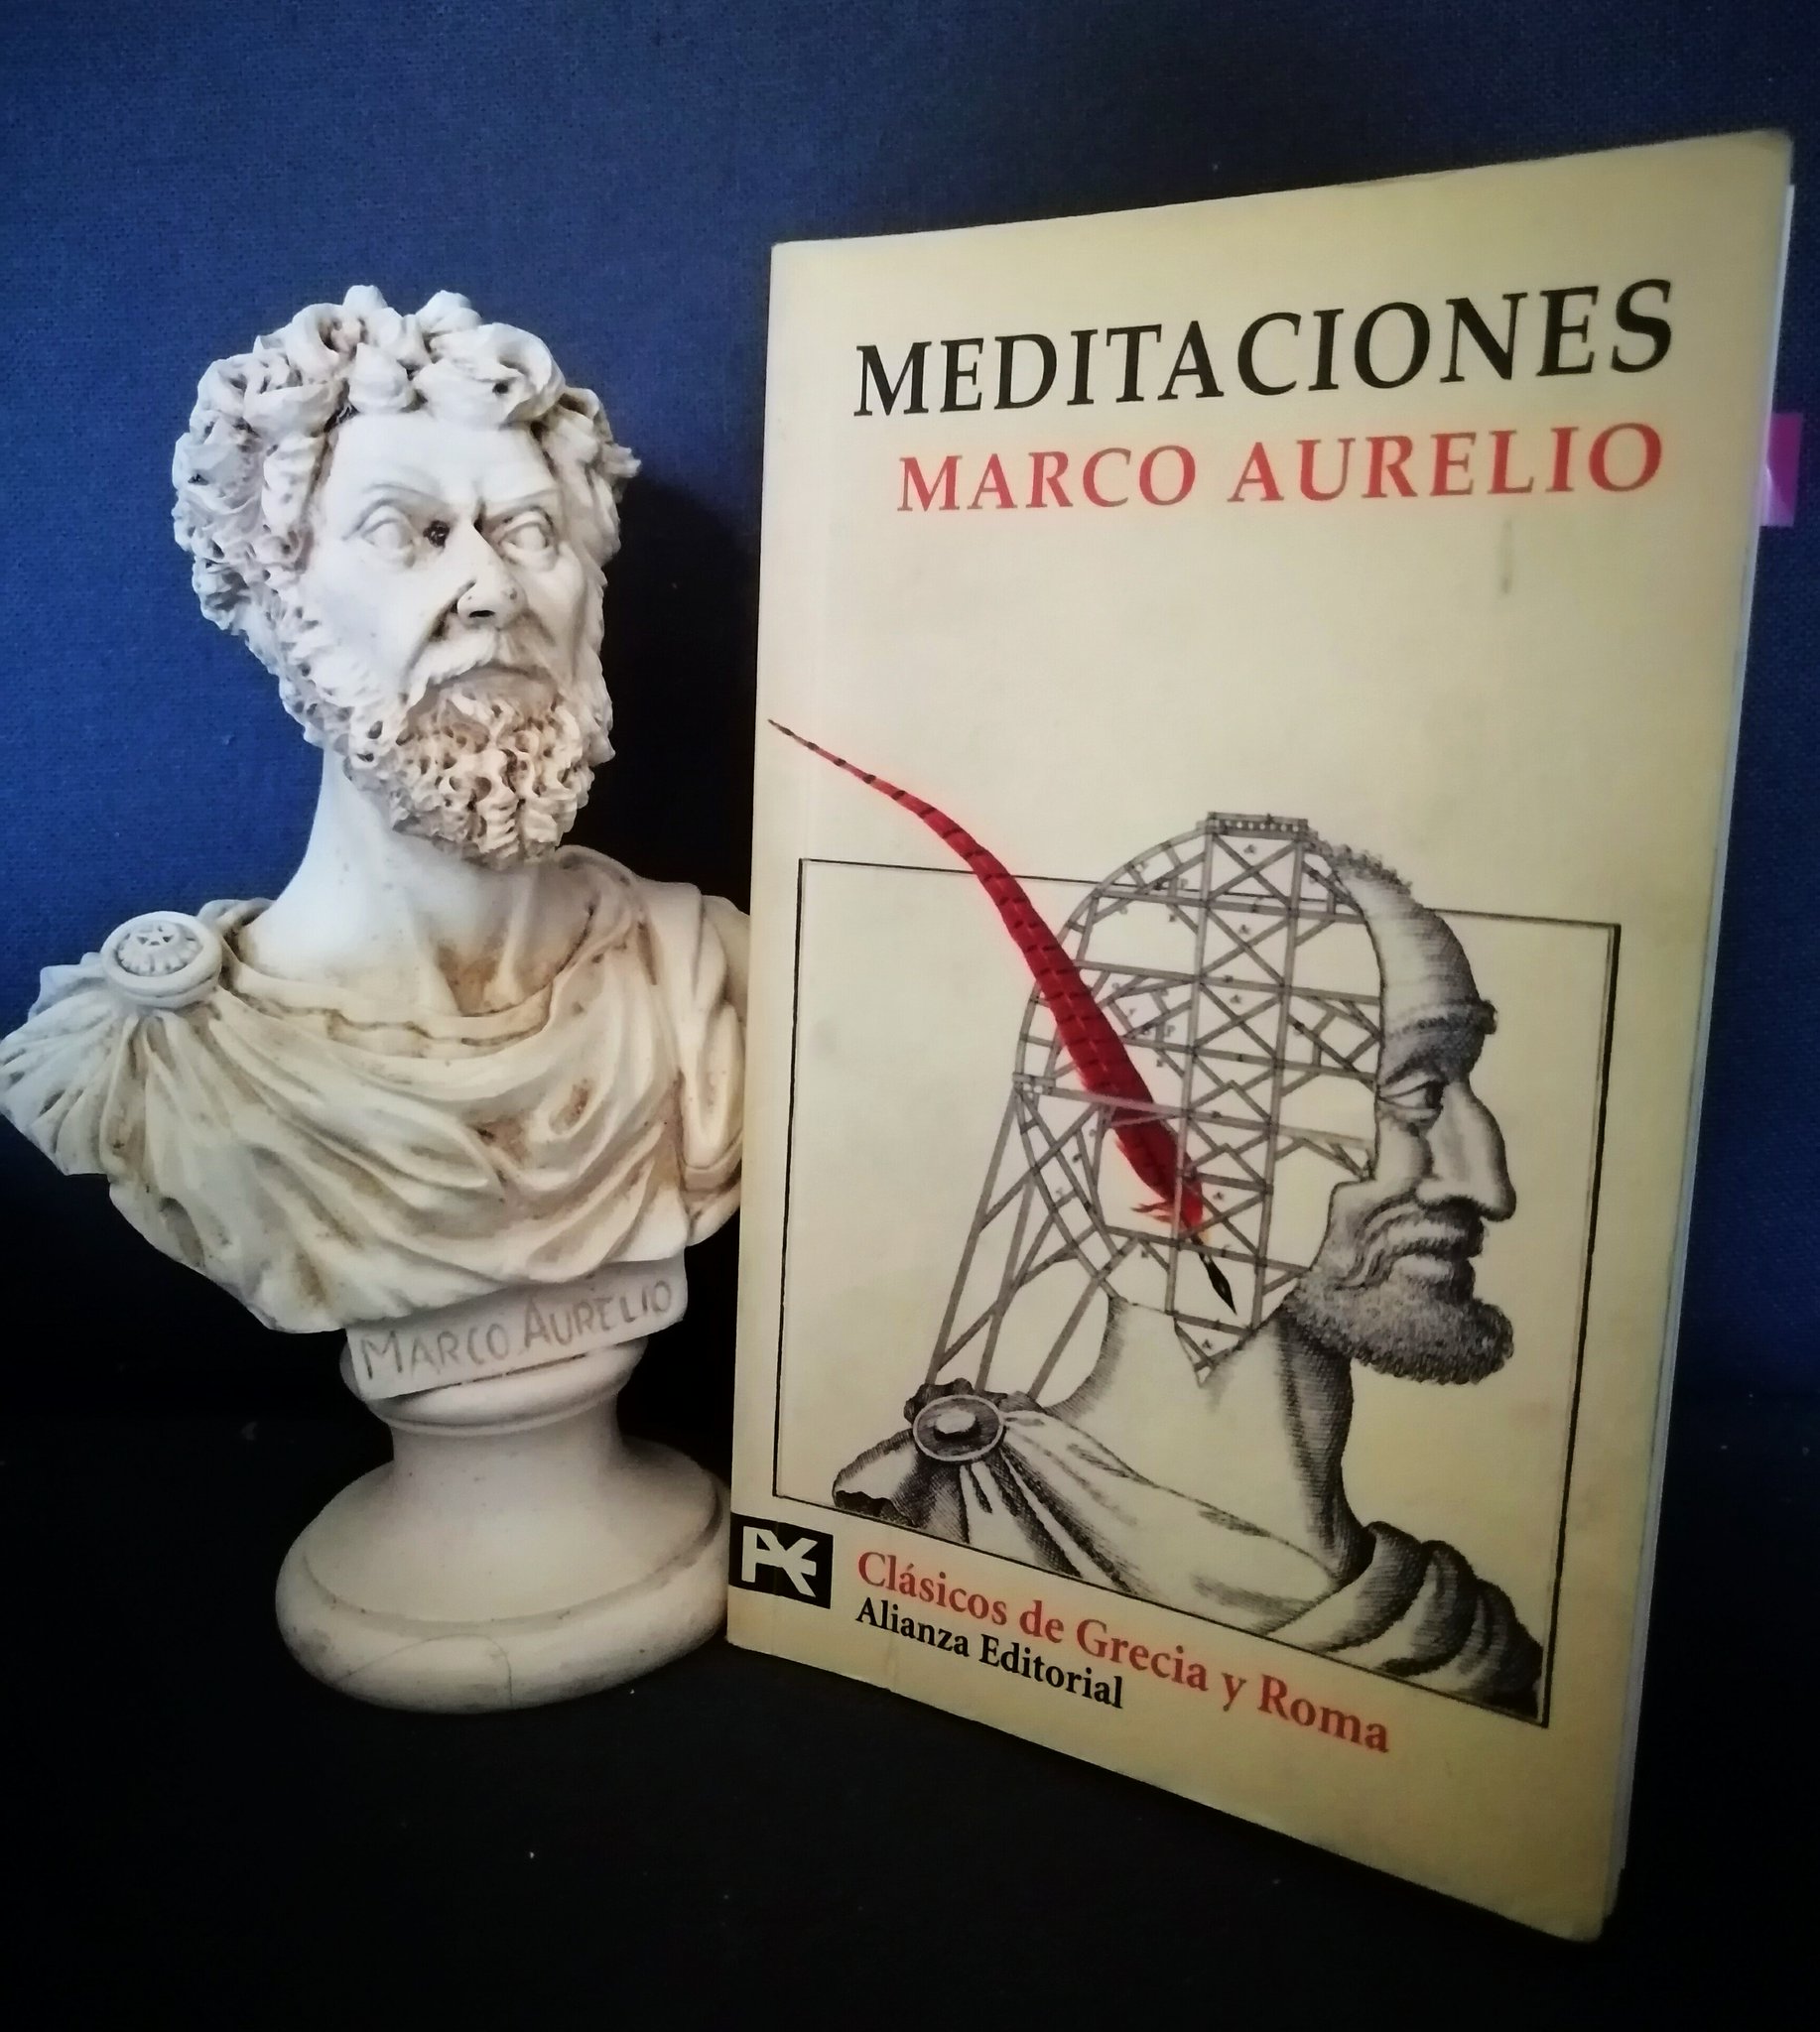 Javier González Serrano Twitter: "Marco Aurelio, el emperador filósofo, nació el 26 de abril del año 121. Sus "Meditaciones", fundamentales. "Aunque fueras a vivir tres años y otras tantas